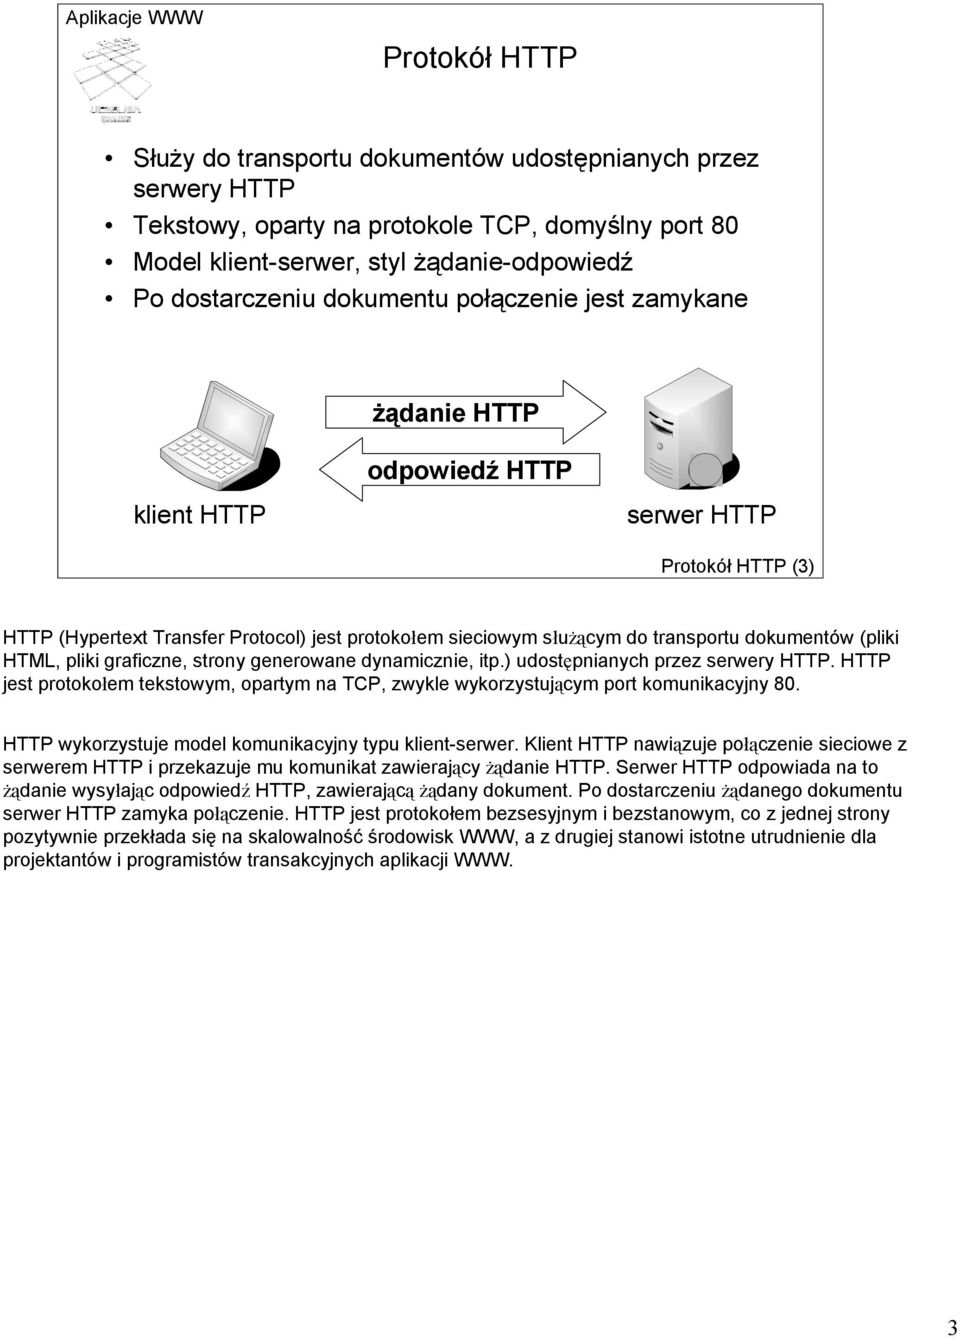 (pliki HTML, pliki graficzne, strony generowane dynamicznie, itp.) udostępnianych przez serwery HTTP. HTTP jest protokołem tekstowym, opartym na TCP, zwykle wykorzystującym port komunikacyjny 80.